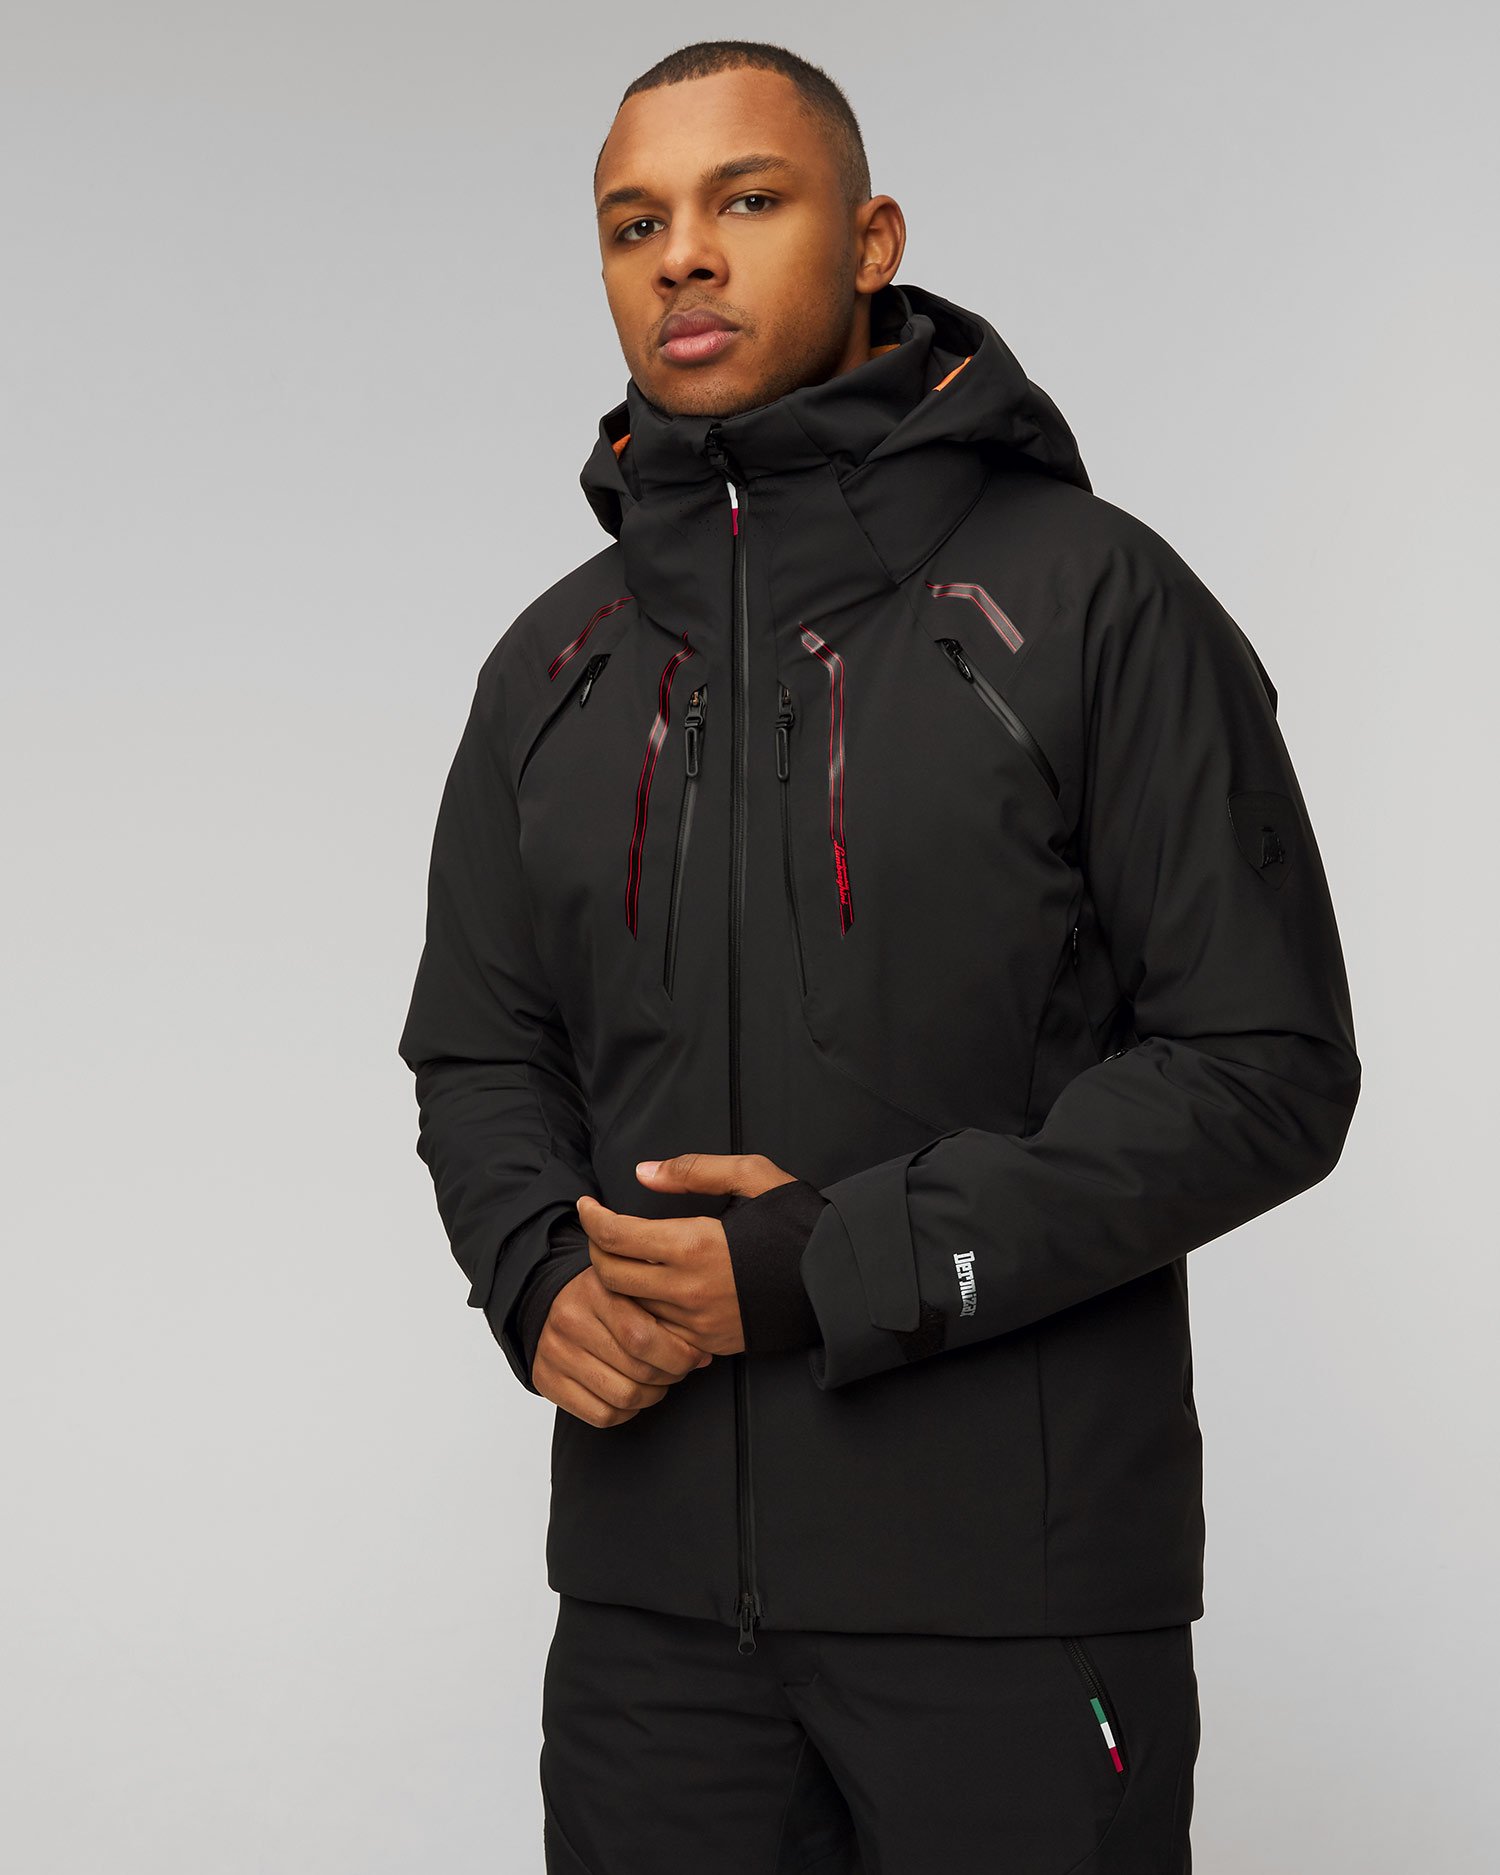 Sous-vêtements de ski respirants pour homme - Premium Noir Noir